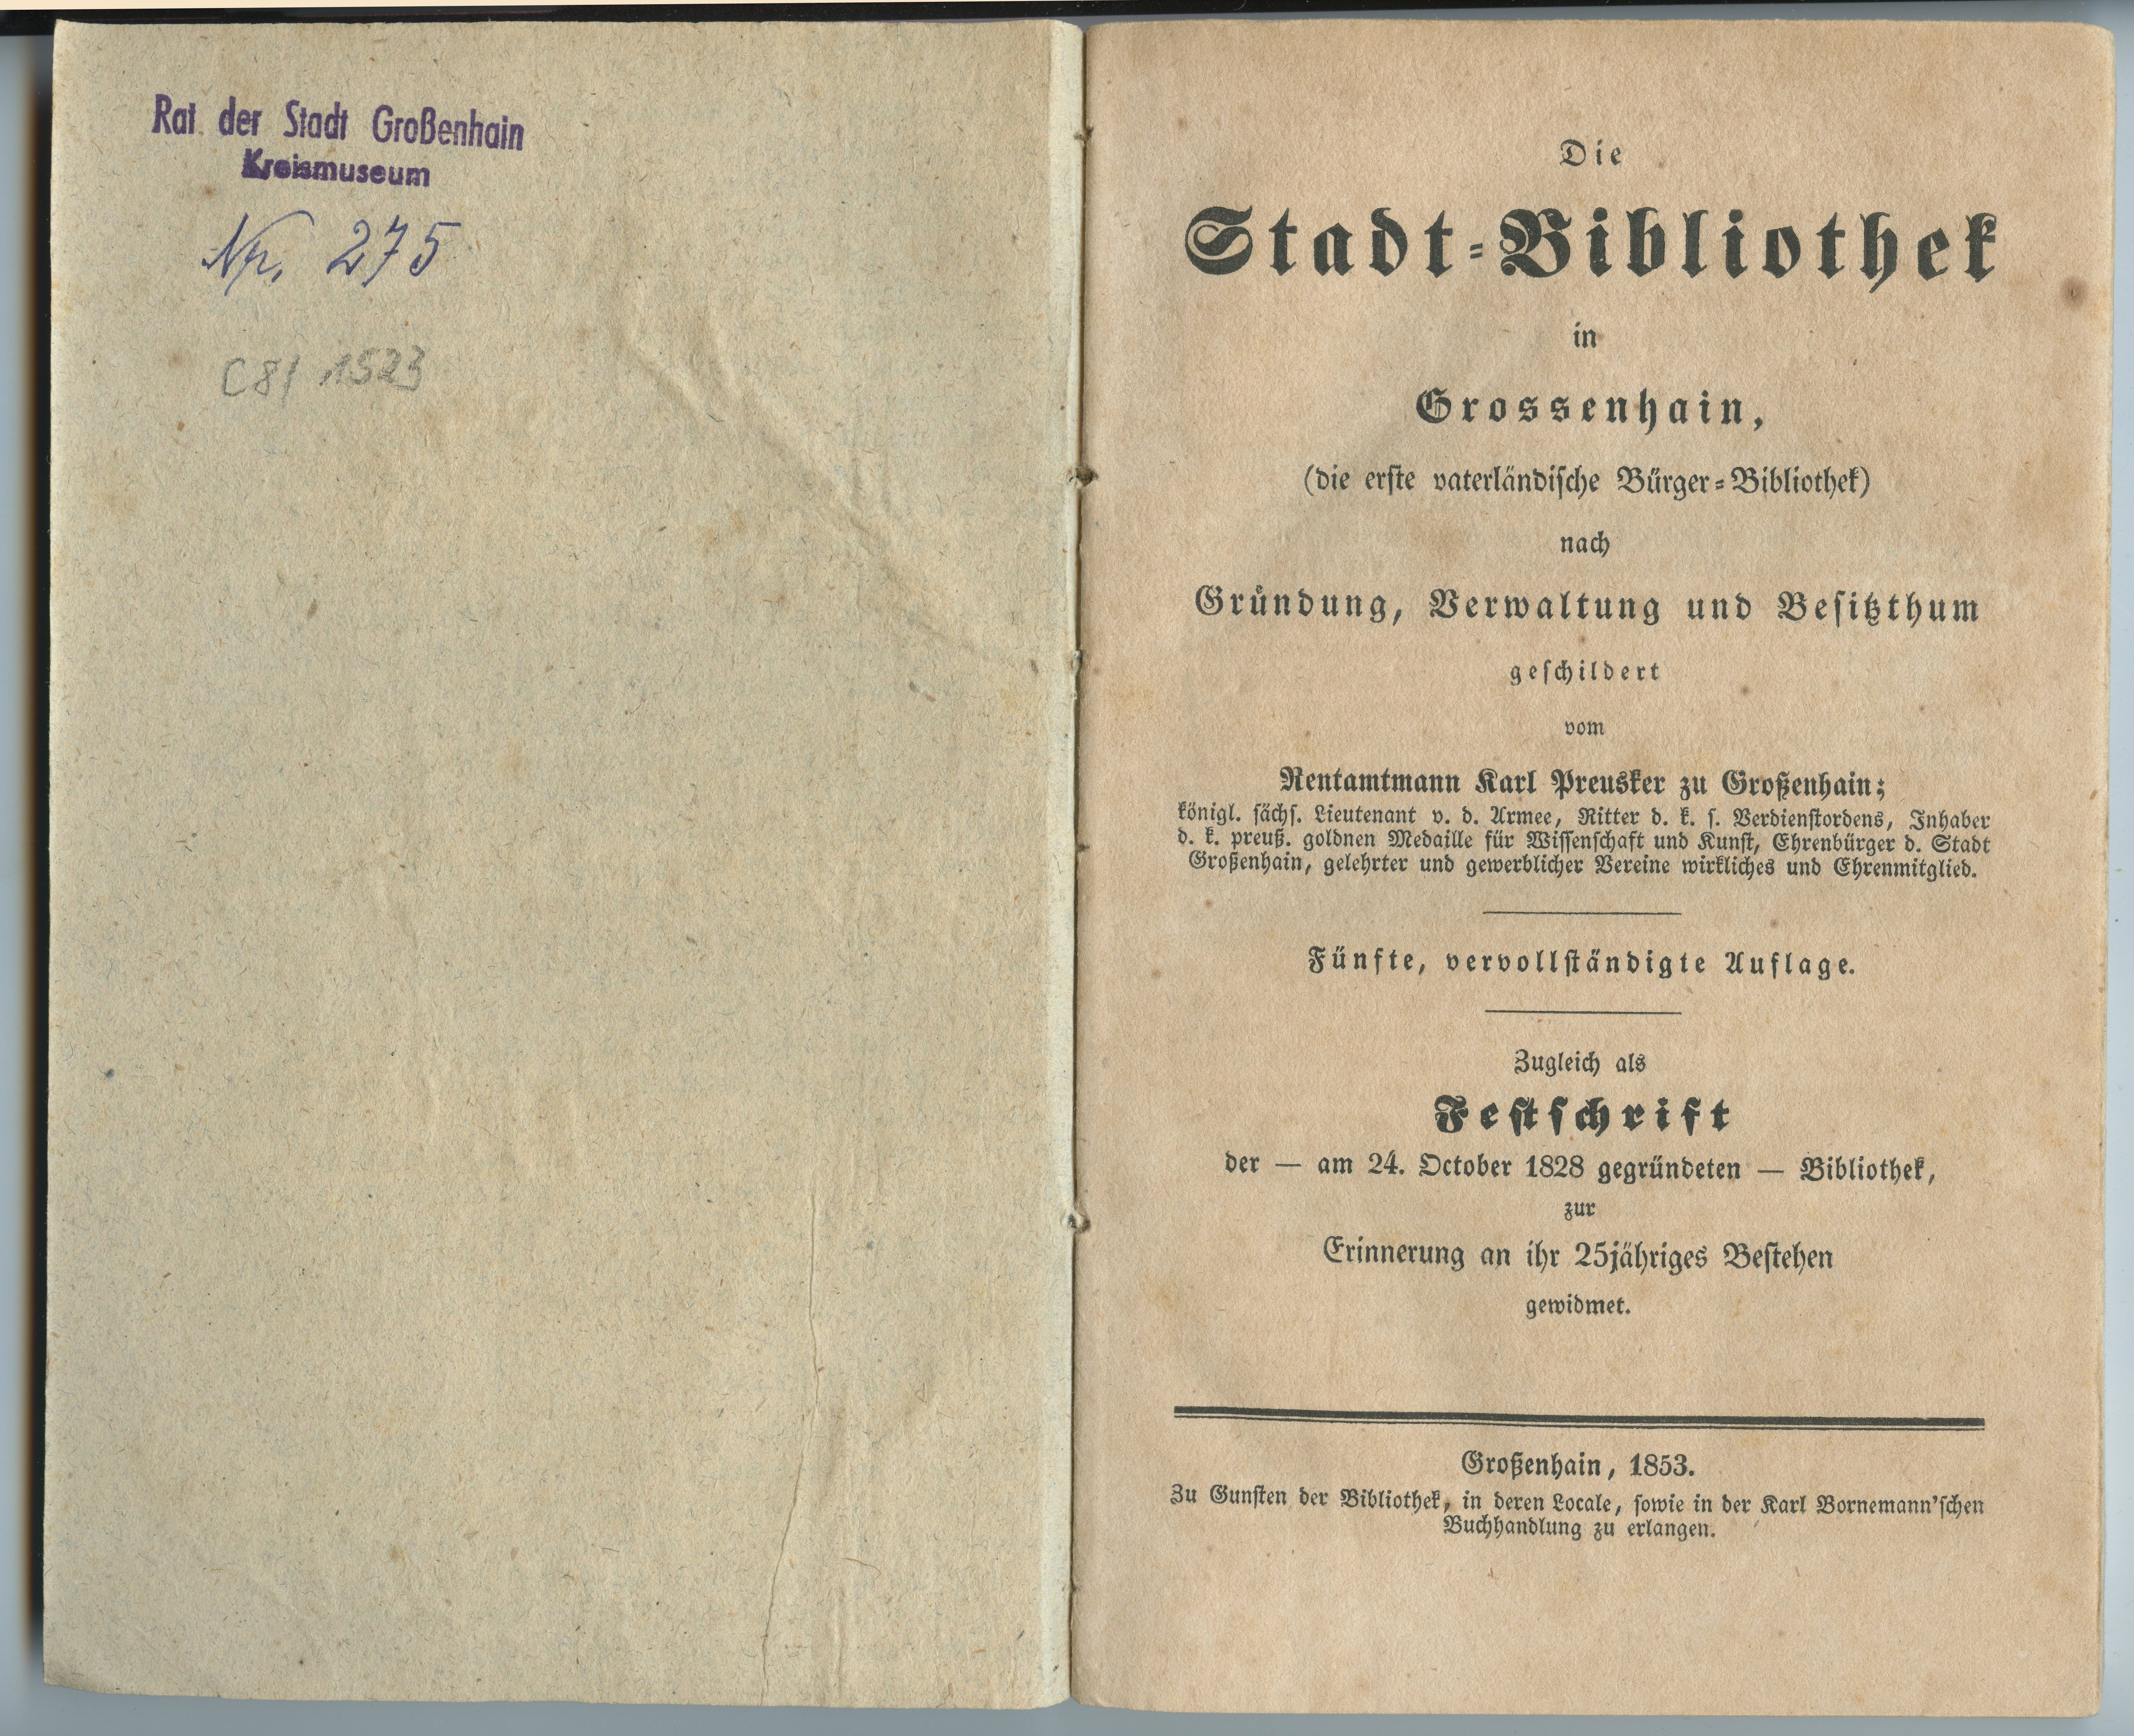 Preusker, Karl: Die Stadt-Bibliothek in Großenhain [...], 5. Auflage 1853 (Museum Alte Lateinschule CC BY-NC-SA)